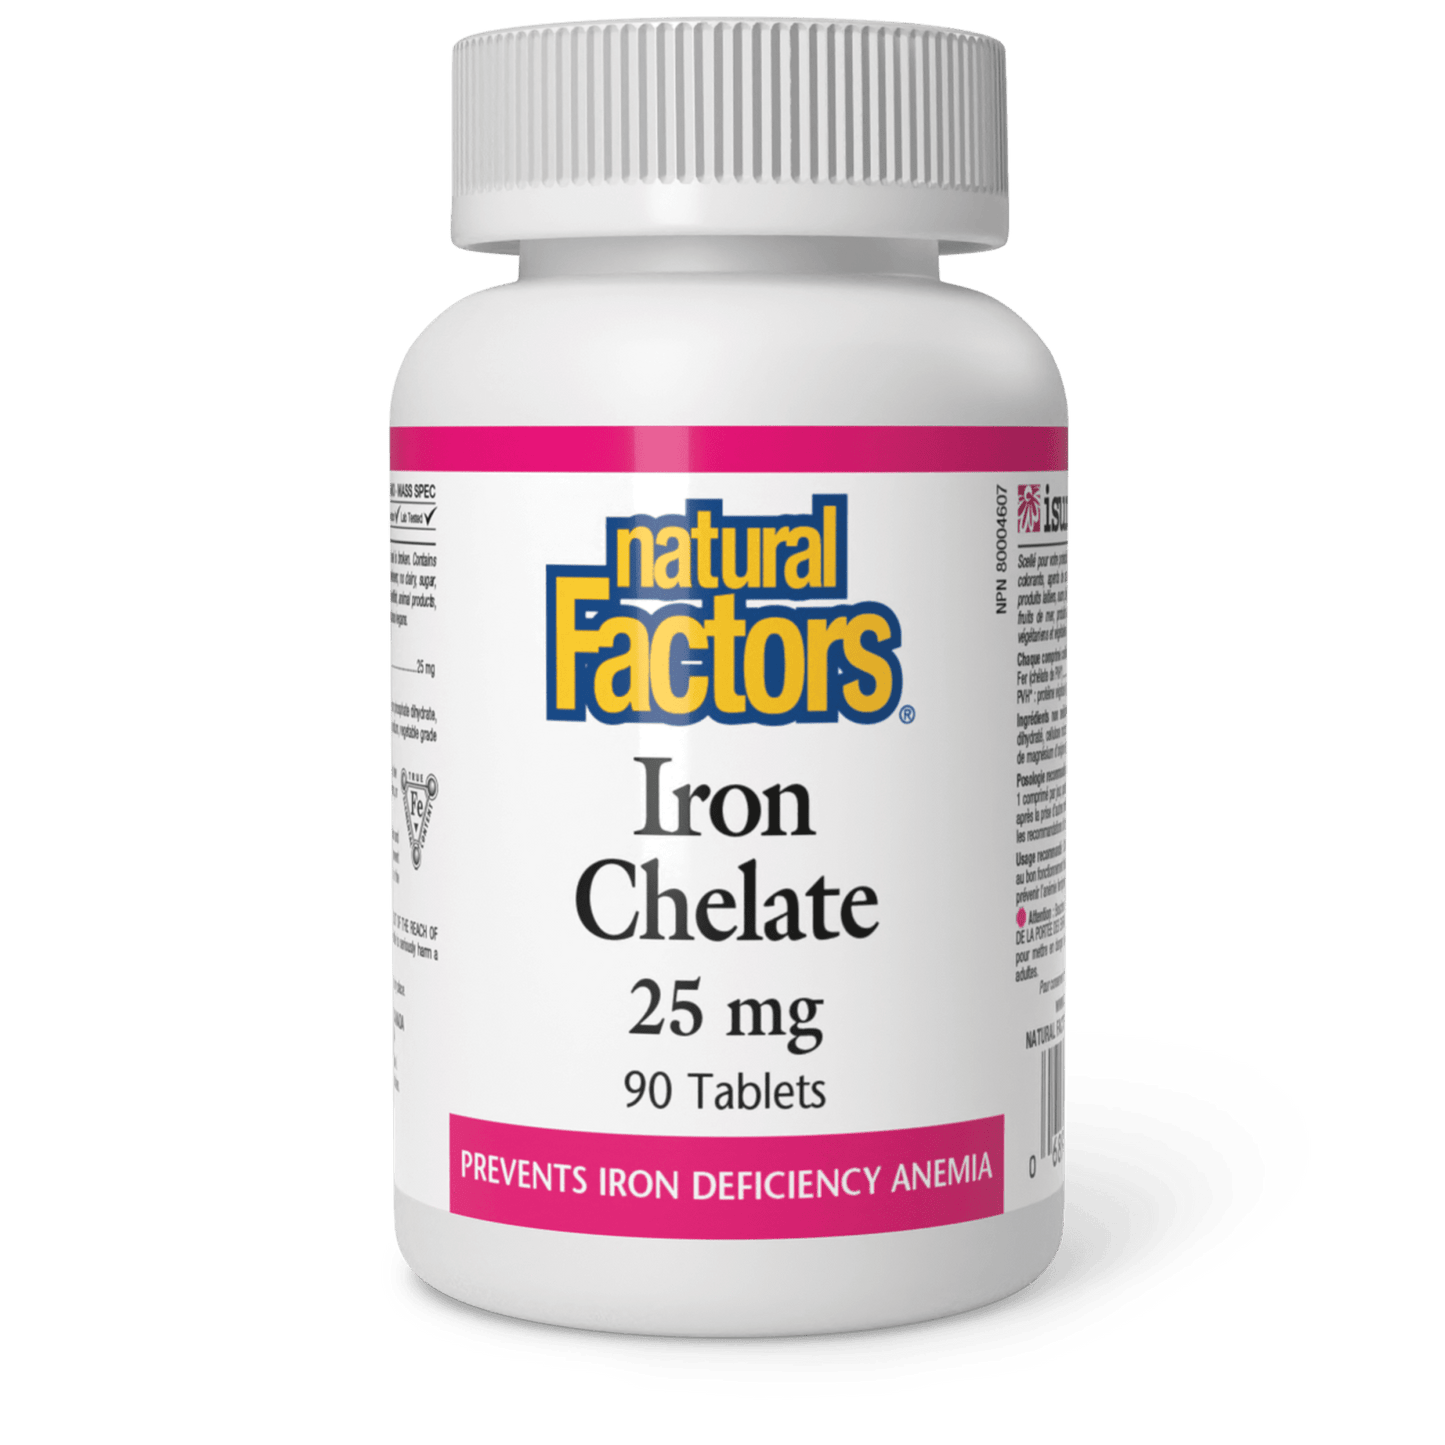 Iron Chelate 25 mg, Natural Factors|v|image|1640